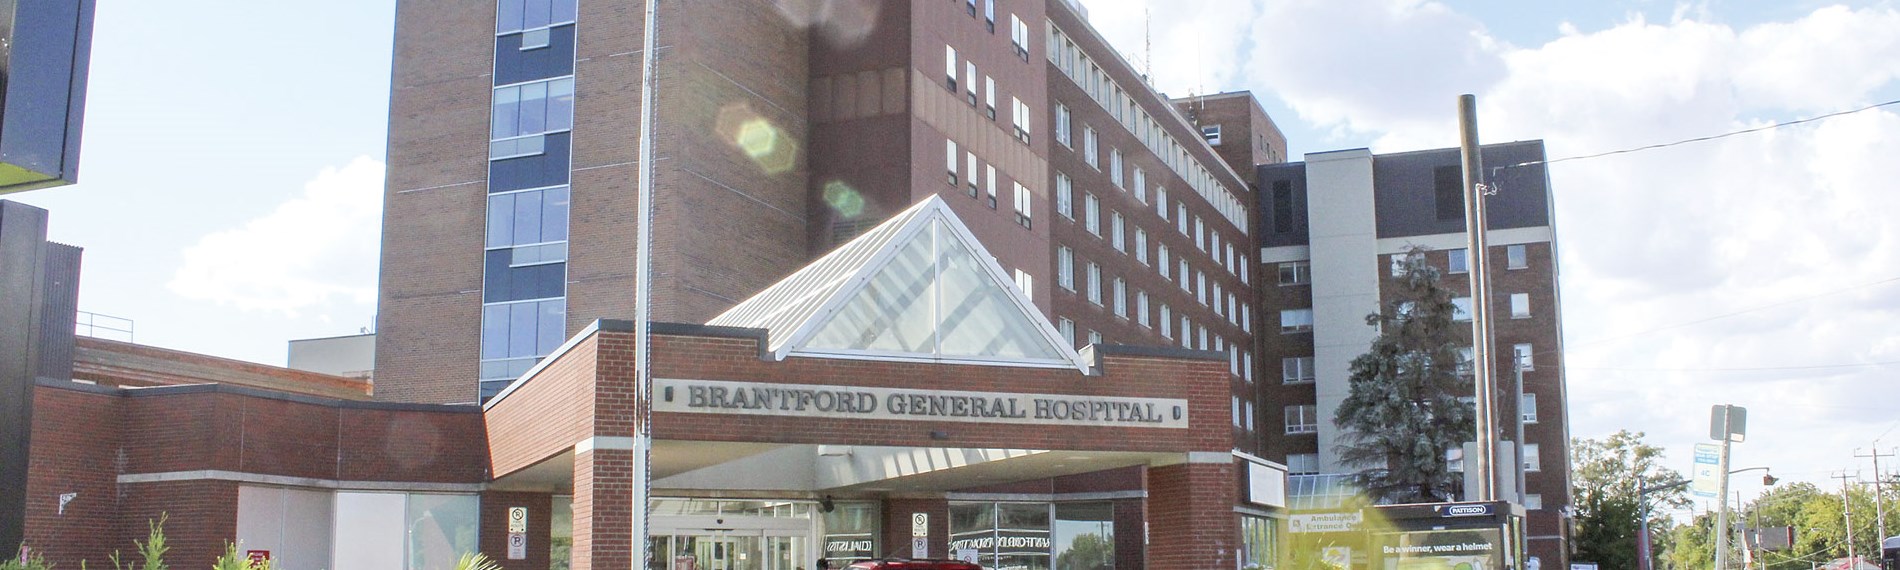 Brantford General Hospital